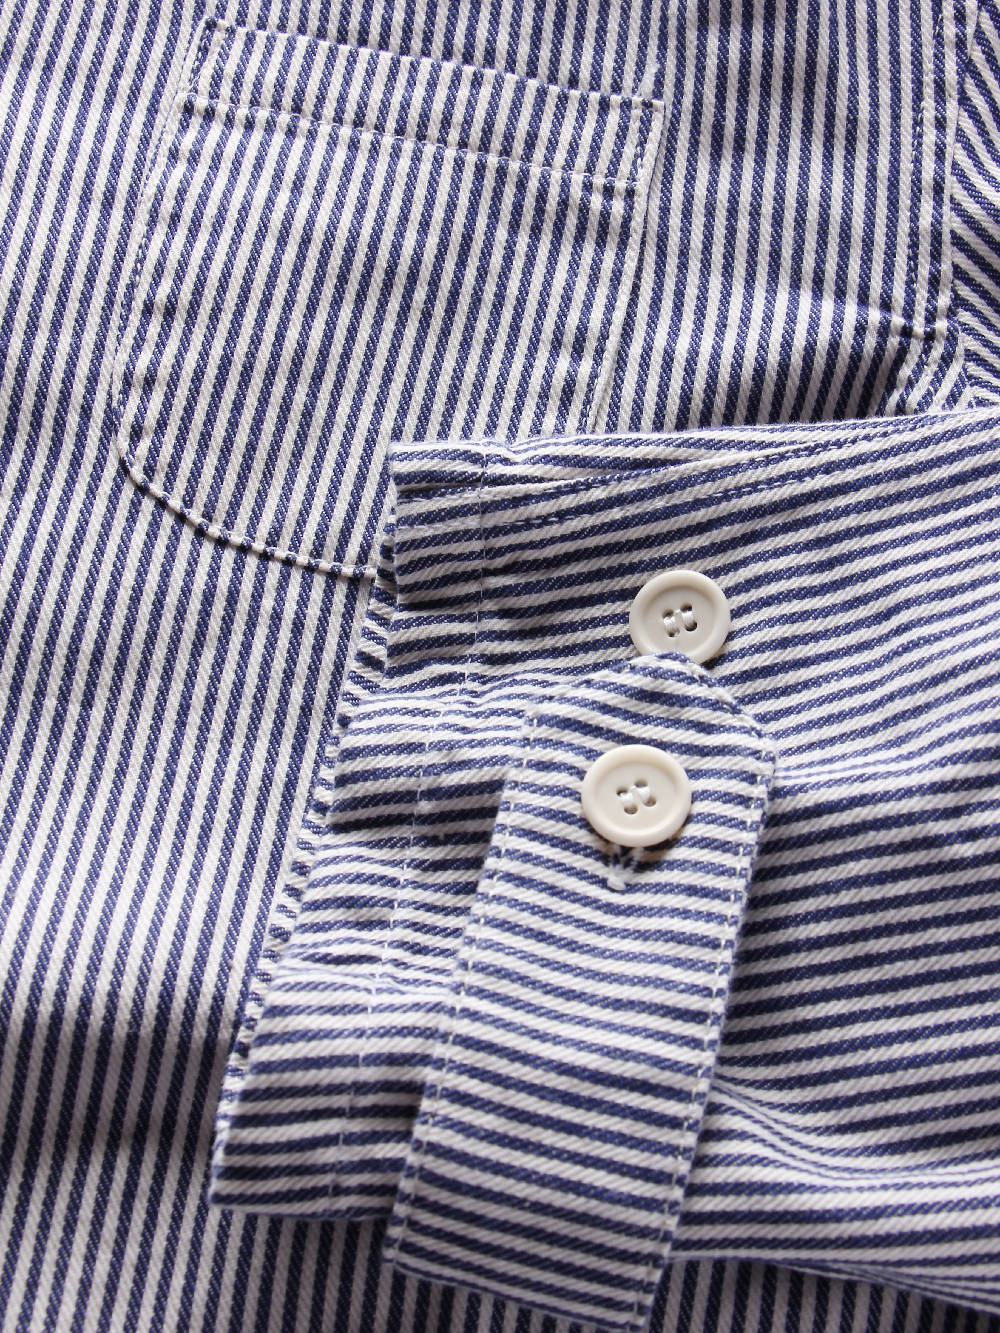 Myar Imj90 Vintage Striped Shirt